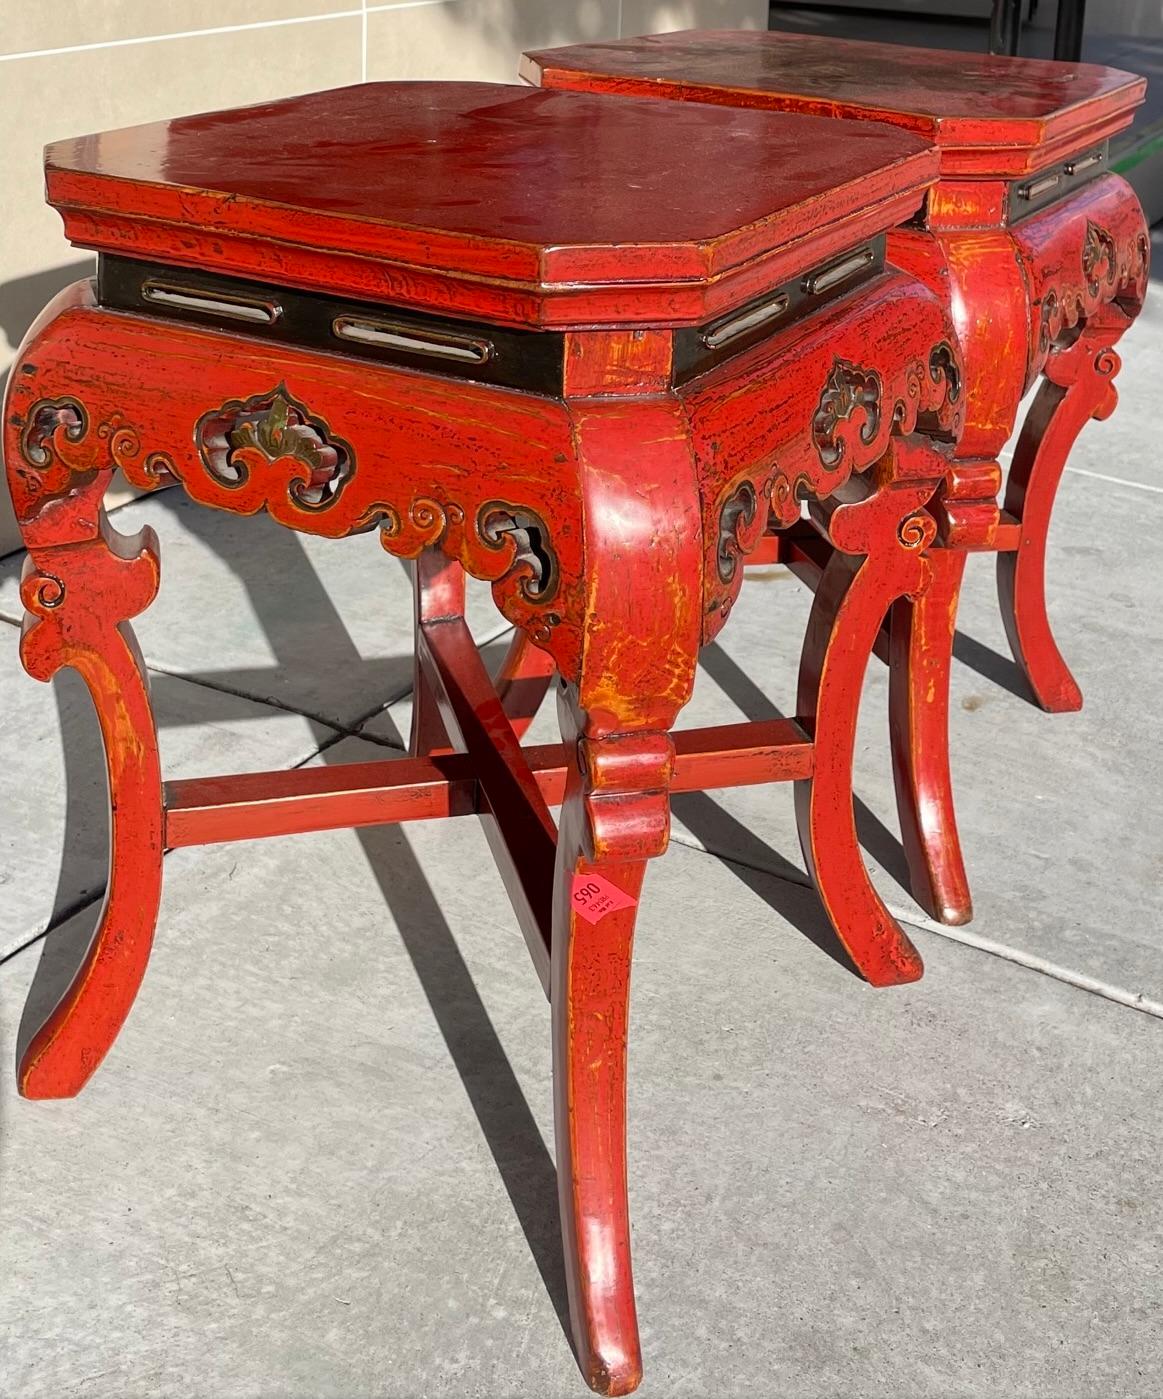 Exquisites Paar seltener fidschianischer Beistelltische. Die Farbe dieser Tische ist fast wie das Rot von Diana Vreeland und hätte sicher auch in einem ihrer berühmten Interieurs gut ausgesehen.